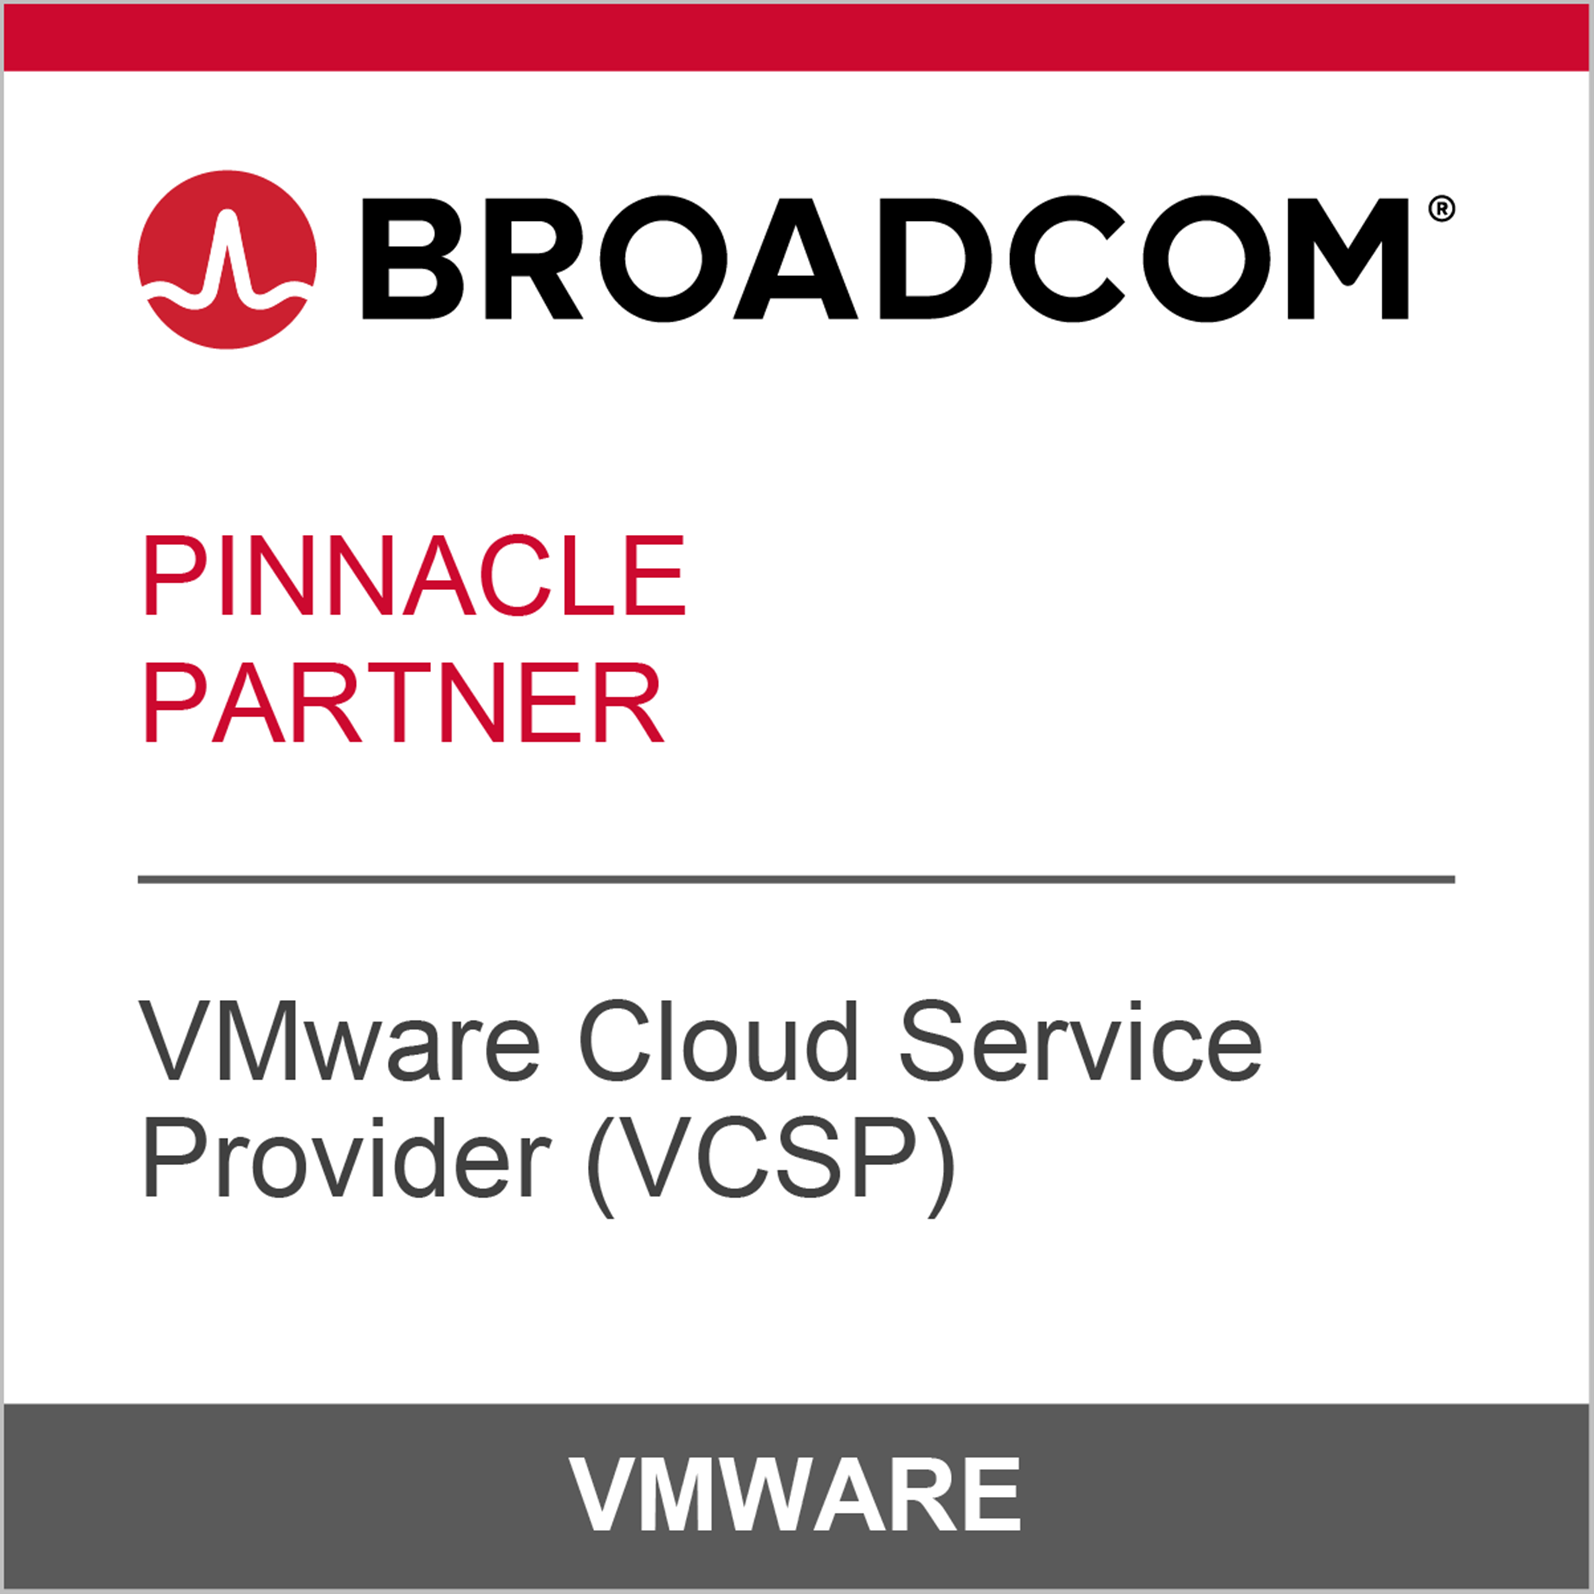 中信國際電訊CPC成為博通 (Broadcom) 戰略合作夥伴榮登VMware 雲服務供應商 (VCSP) - Pinnacle最高合作級別位置